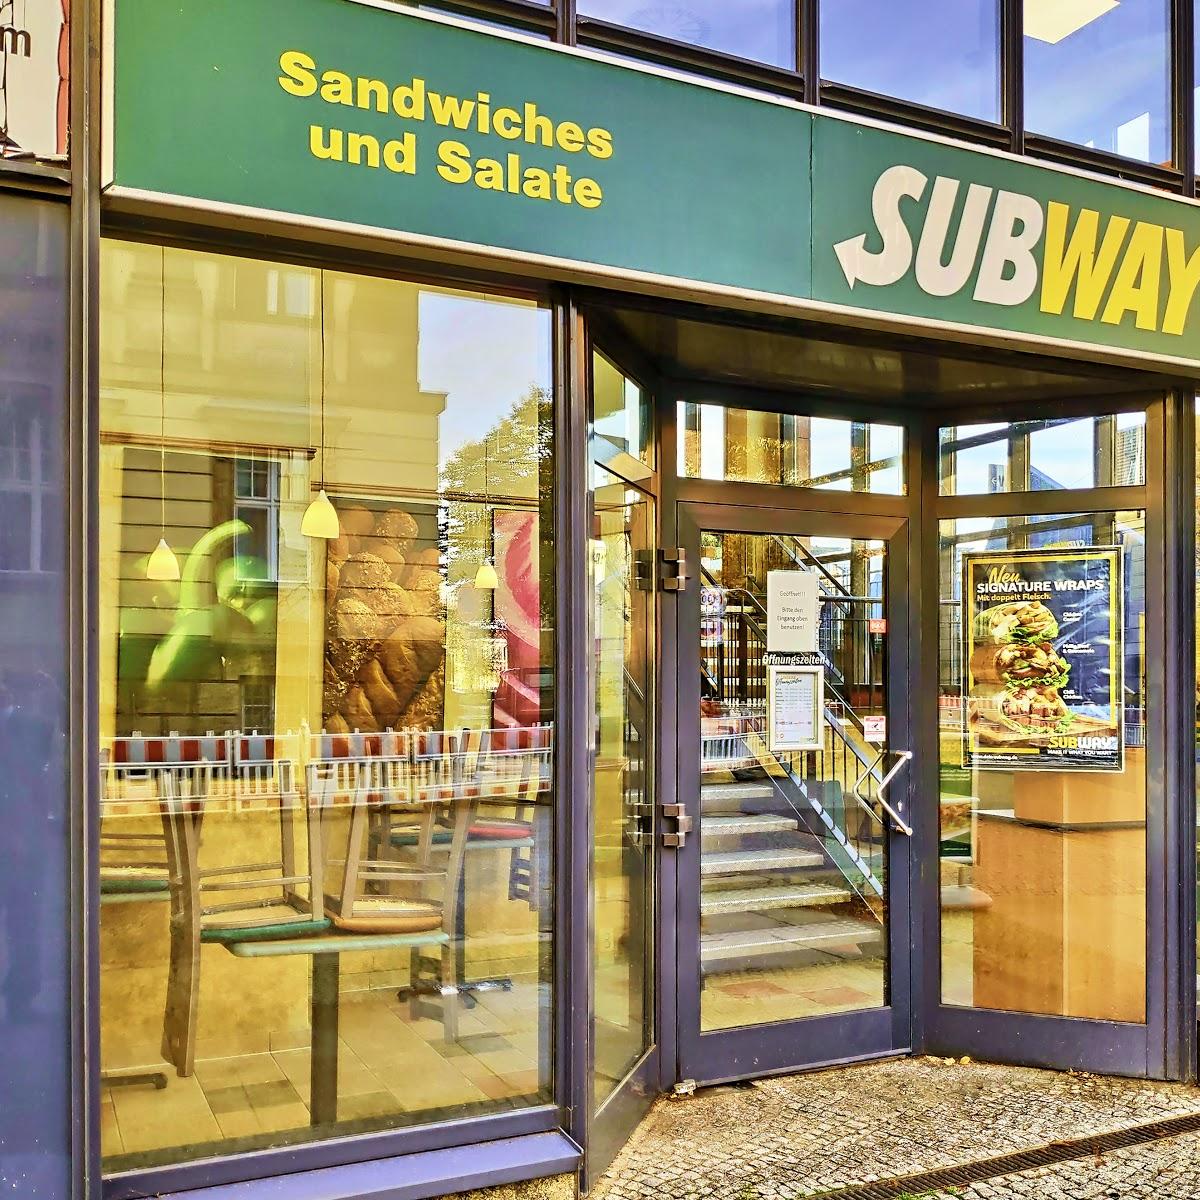 Restaurant "Subway" in Frankfurt (Oder)